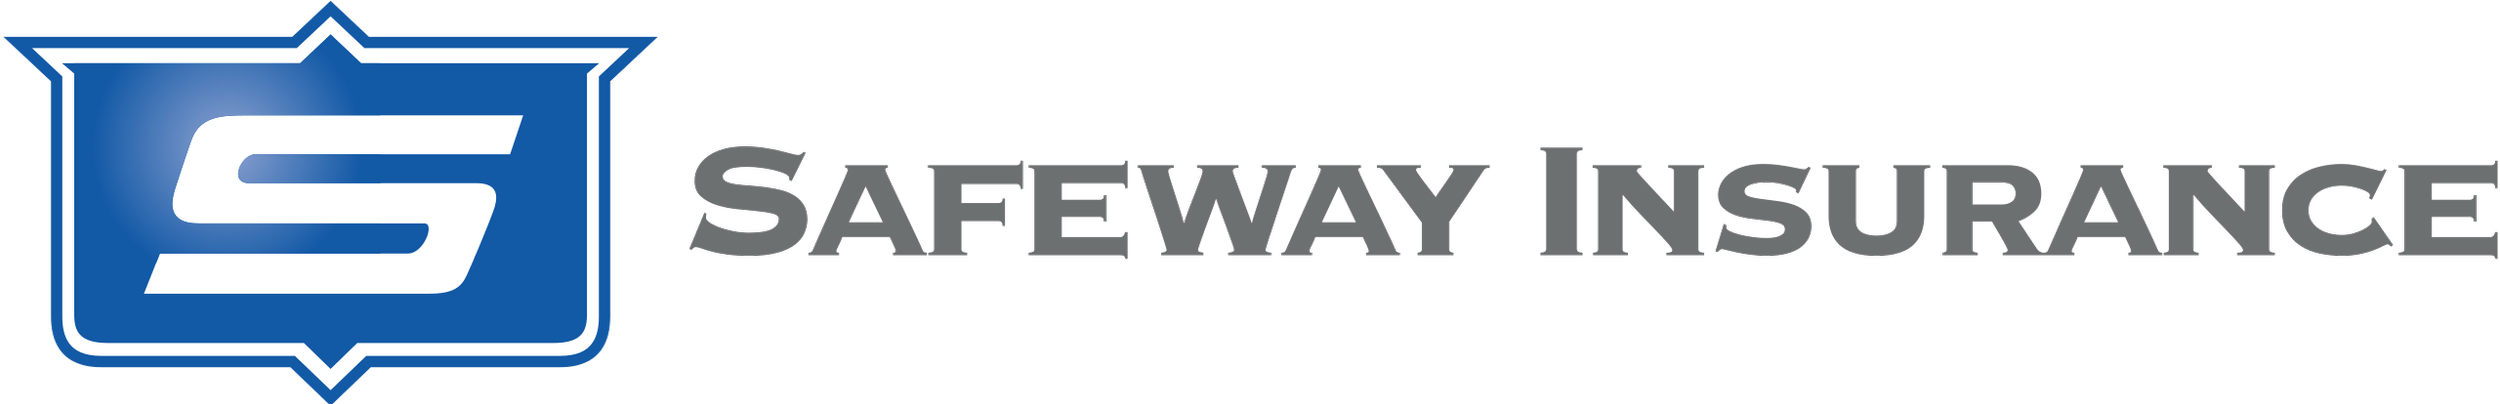 Safeway_Insurance_Group_Logo.svg.png